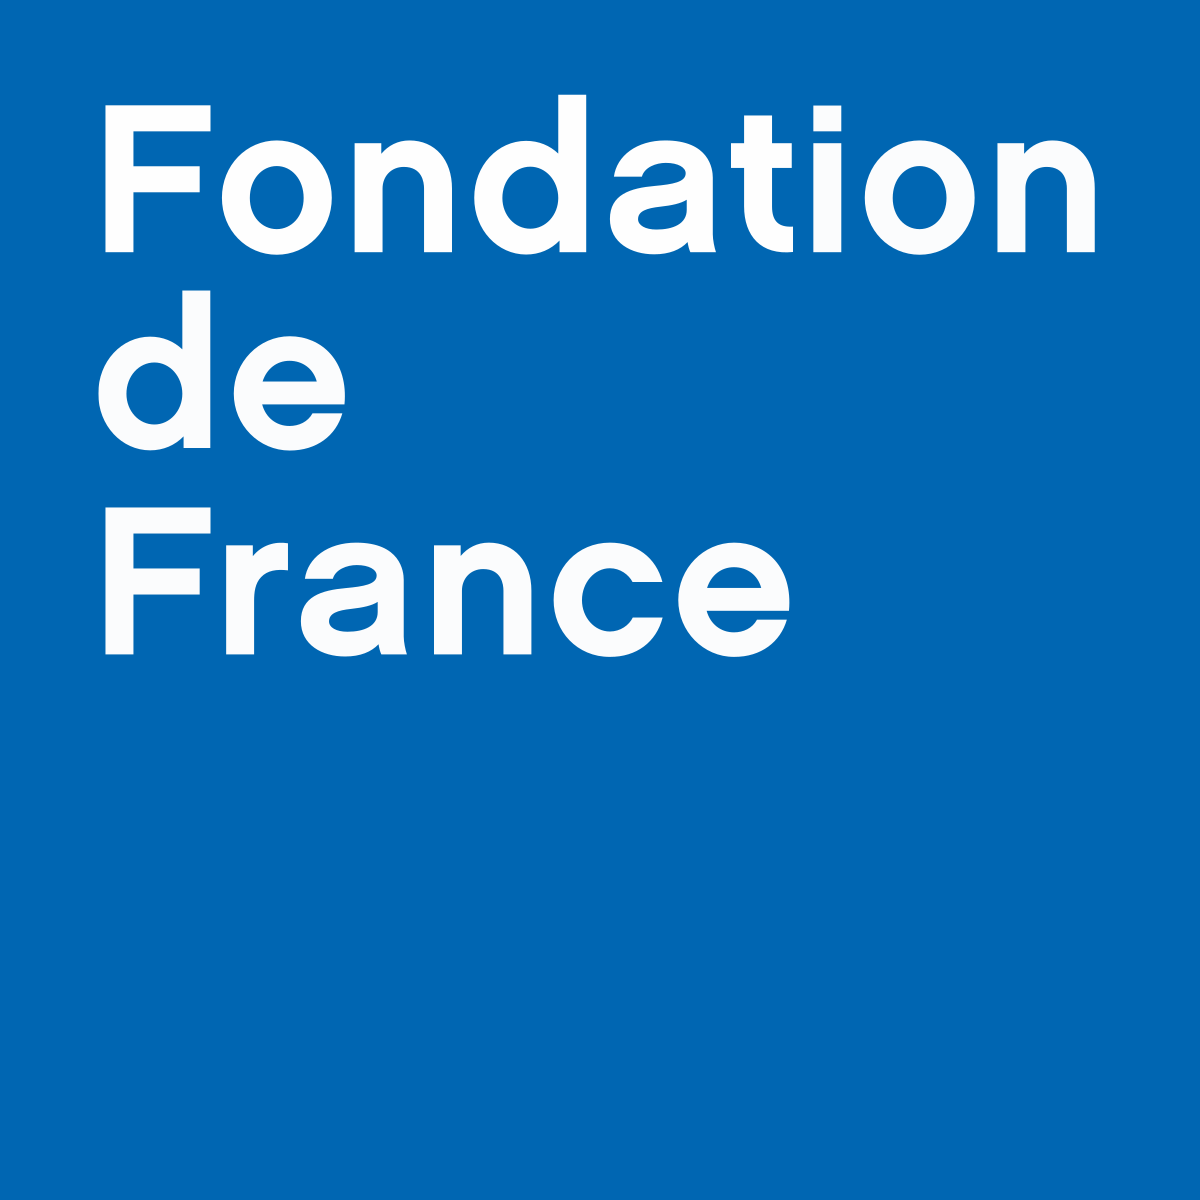 fondation de france.svg